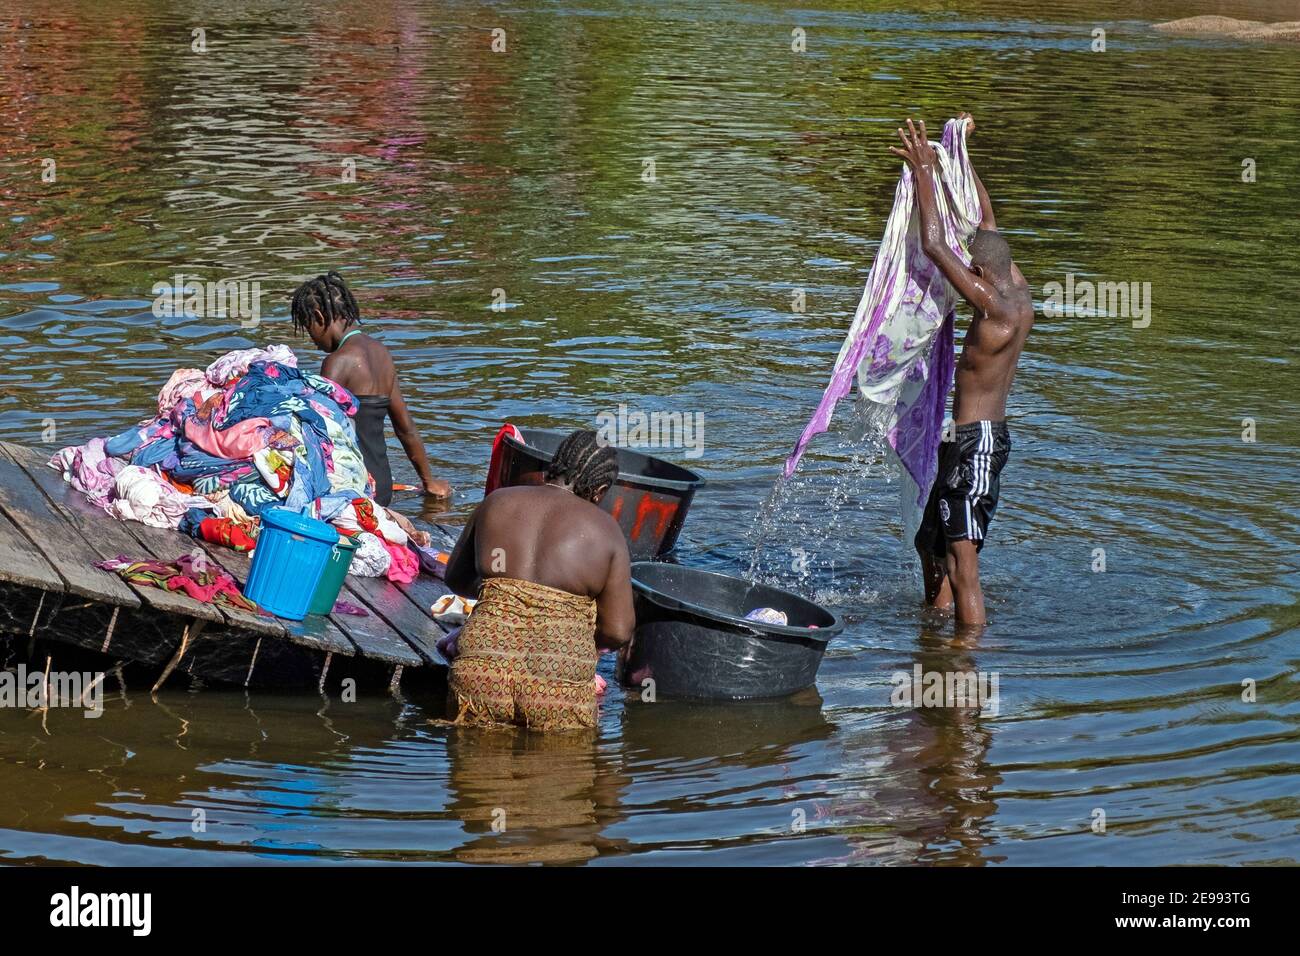 Afro-Surinamese family washing clothes in the Suriname River near Aurora, Sipaliwini District, Suriname / Surinam Stock Photo